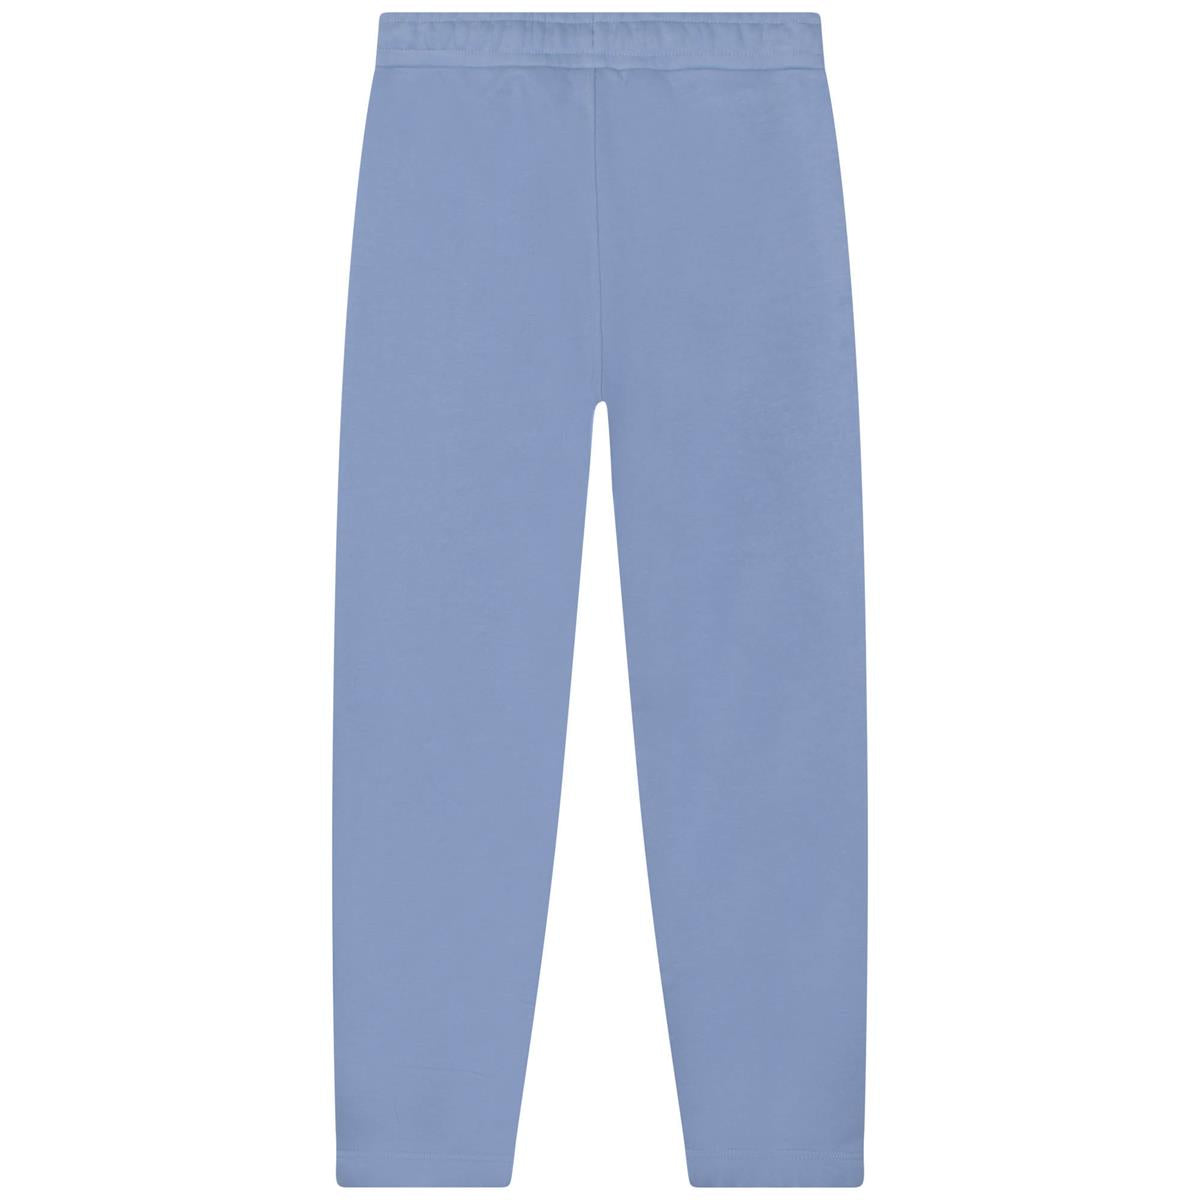 Boys Light Blue Cotton Trousers